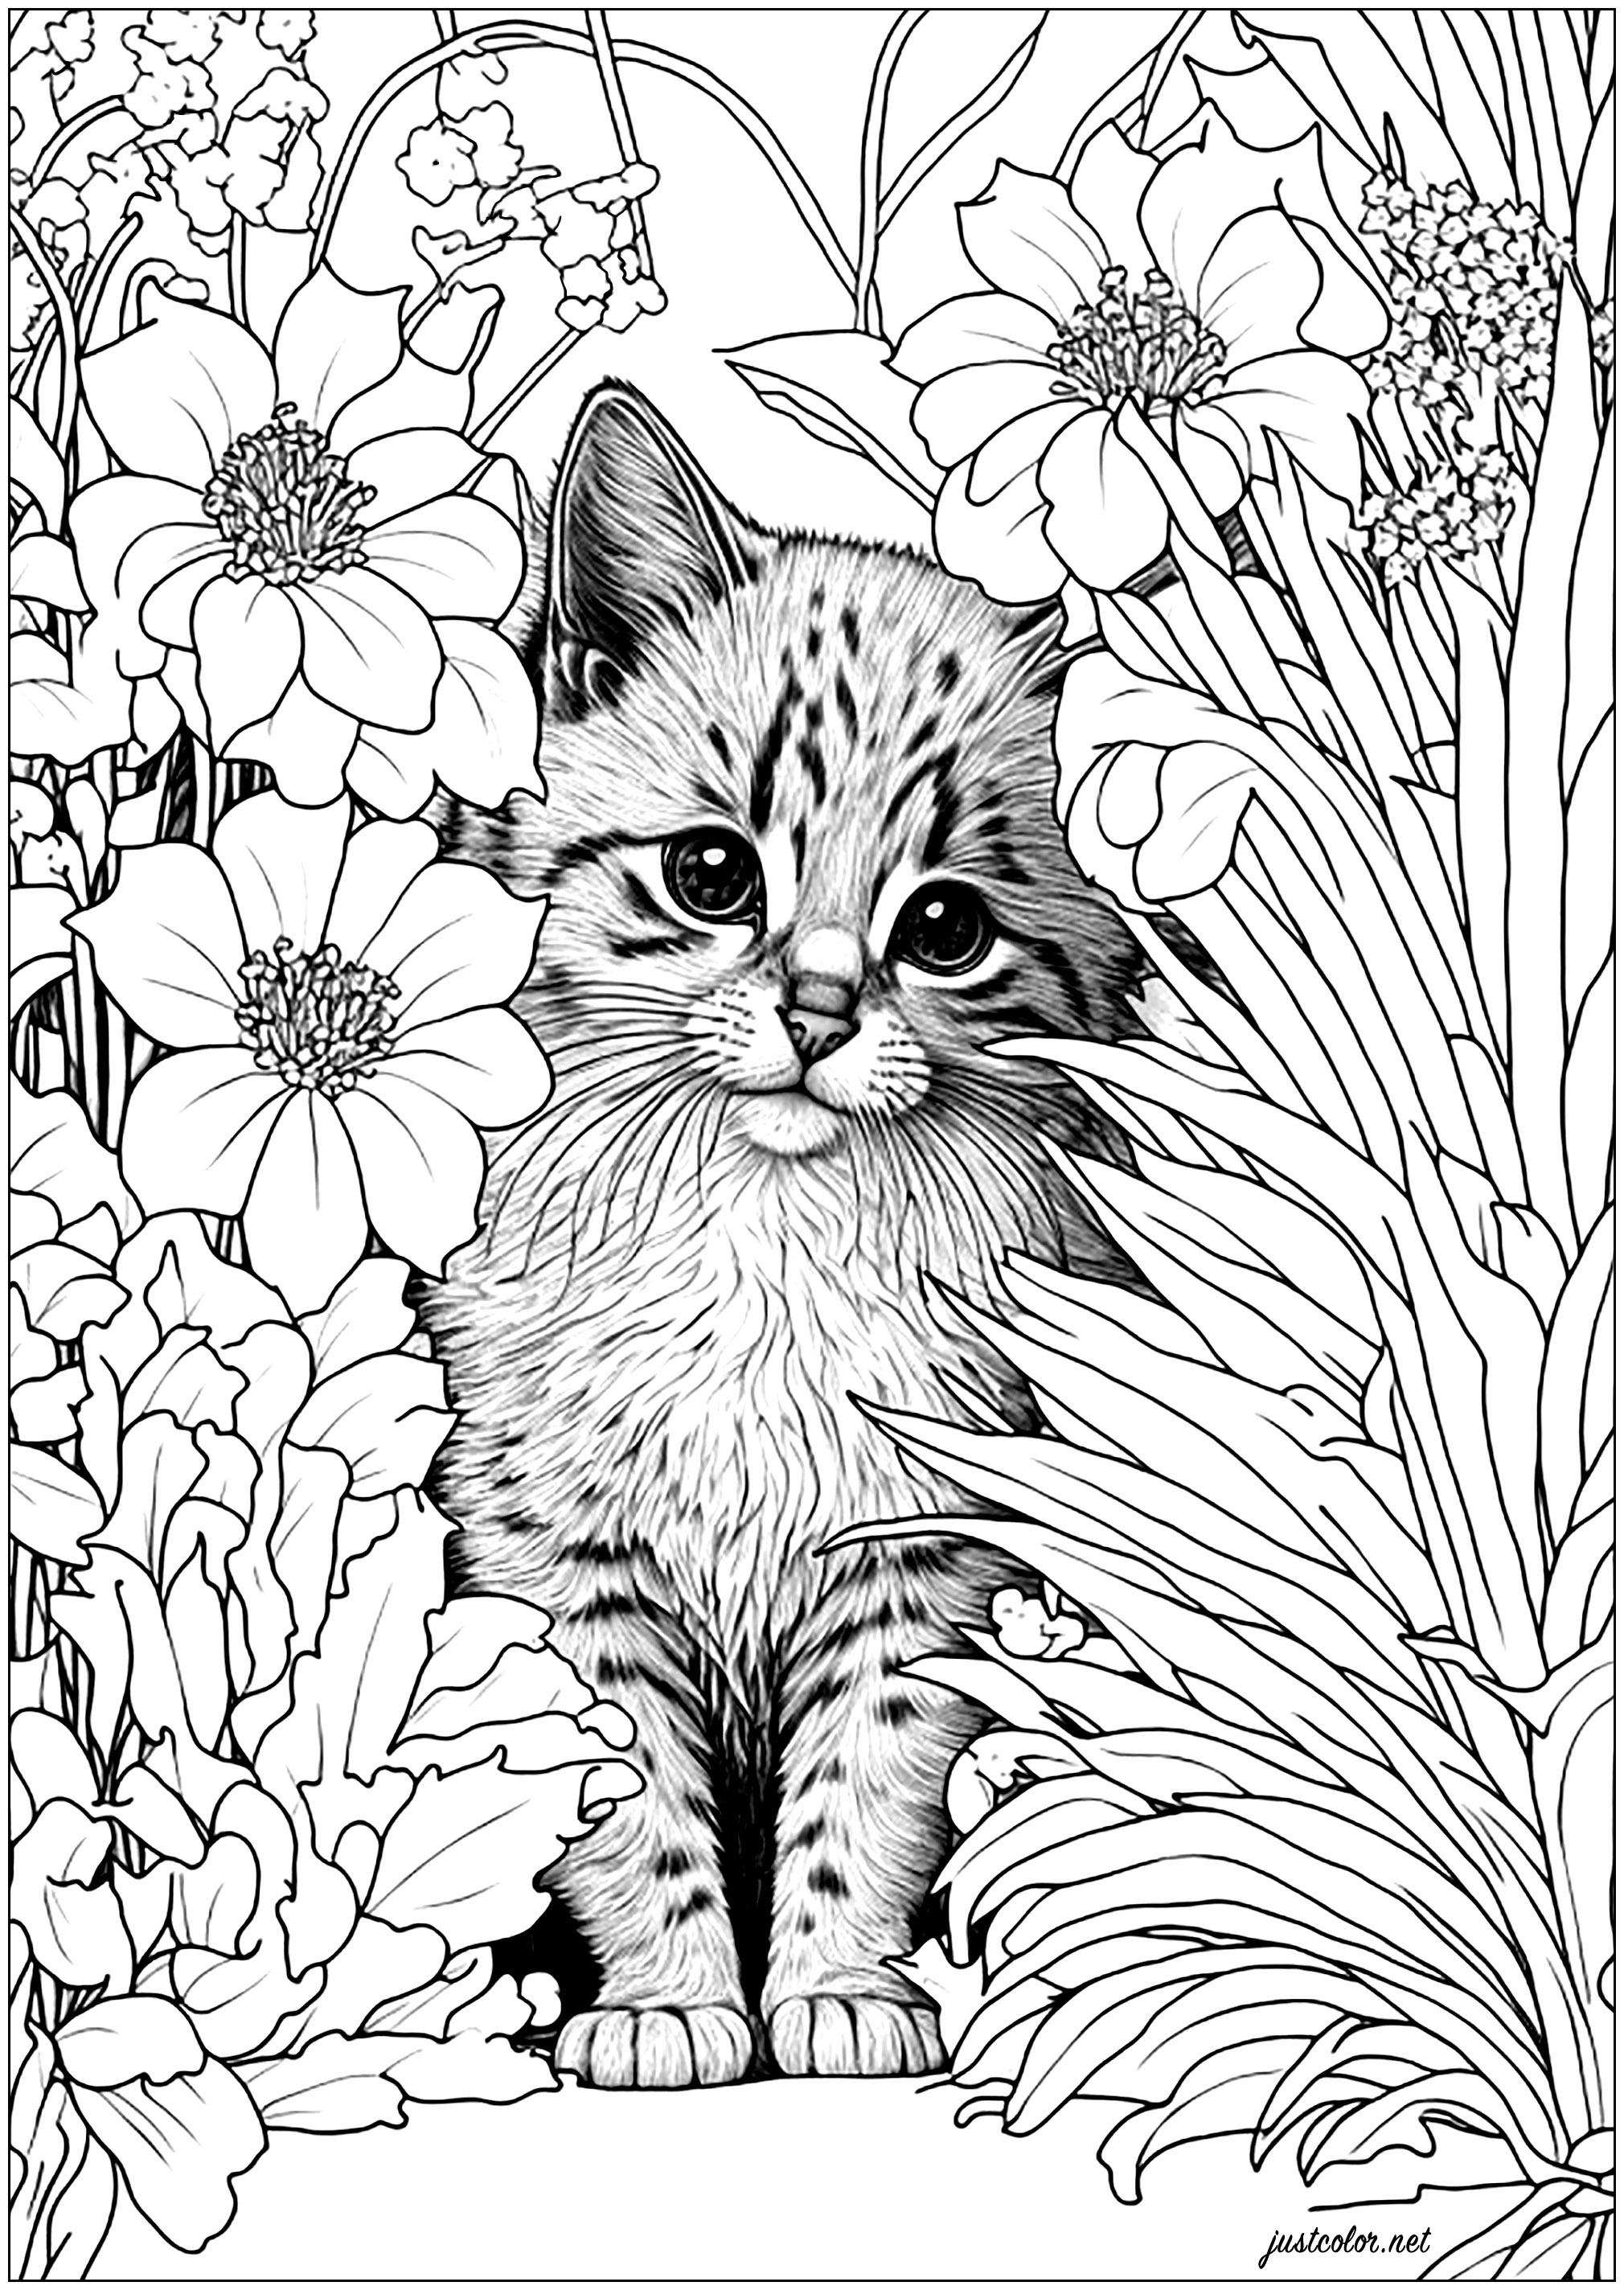 Niedliche, realistische Katze hinter Blumen versteckt